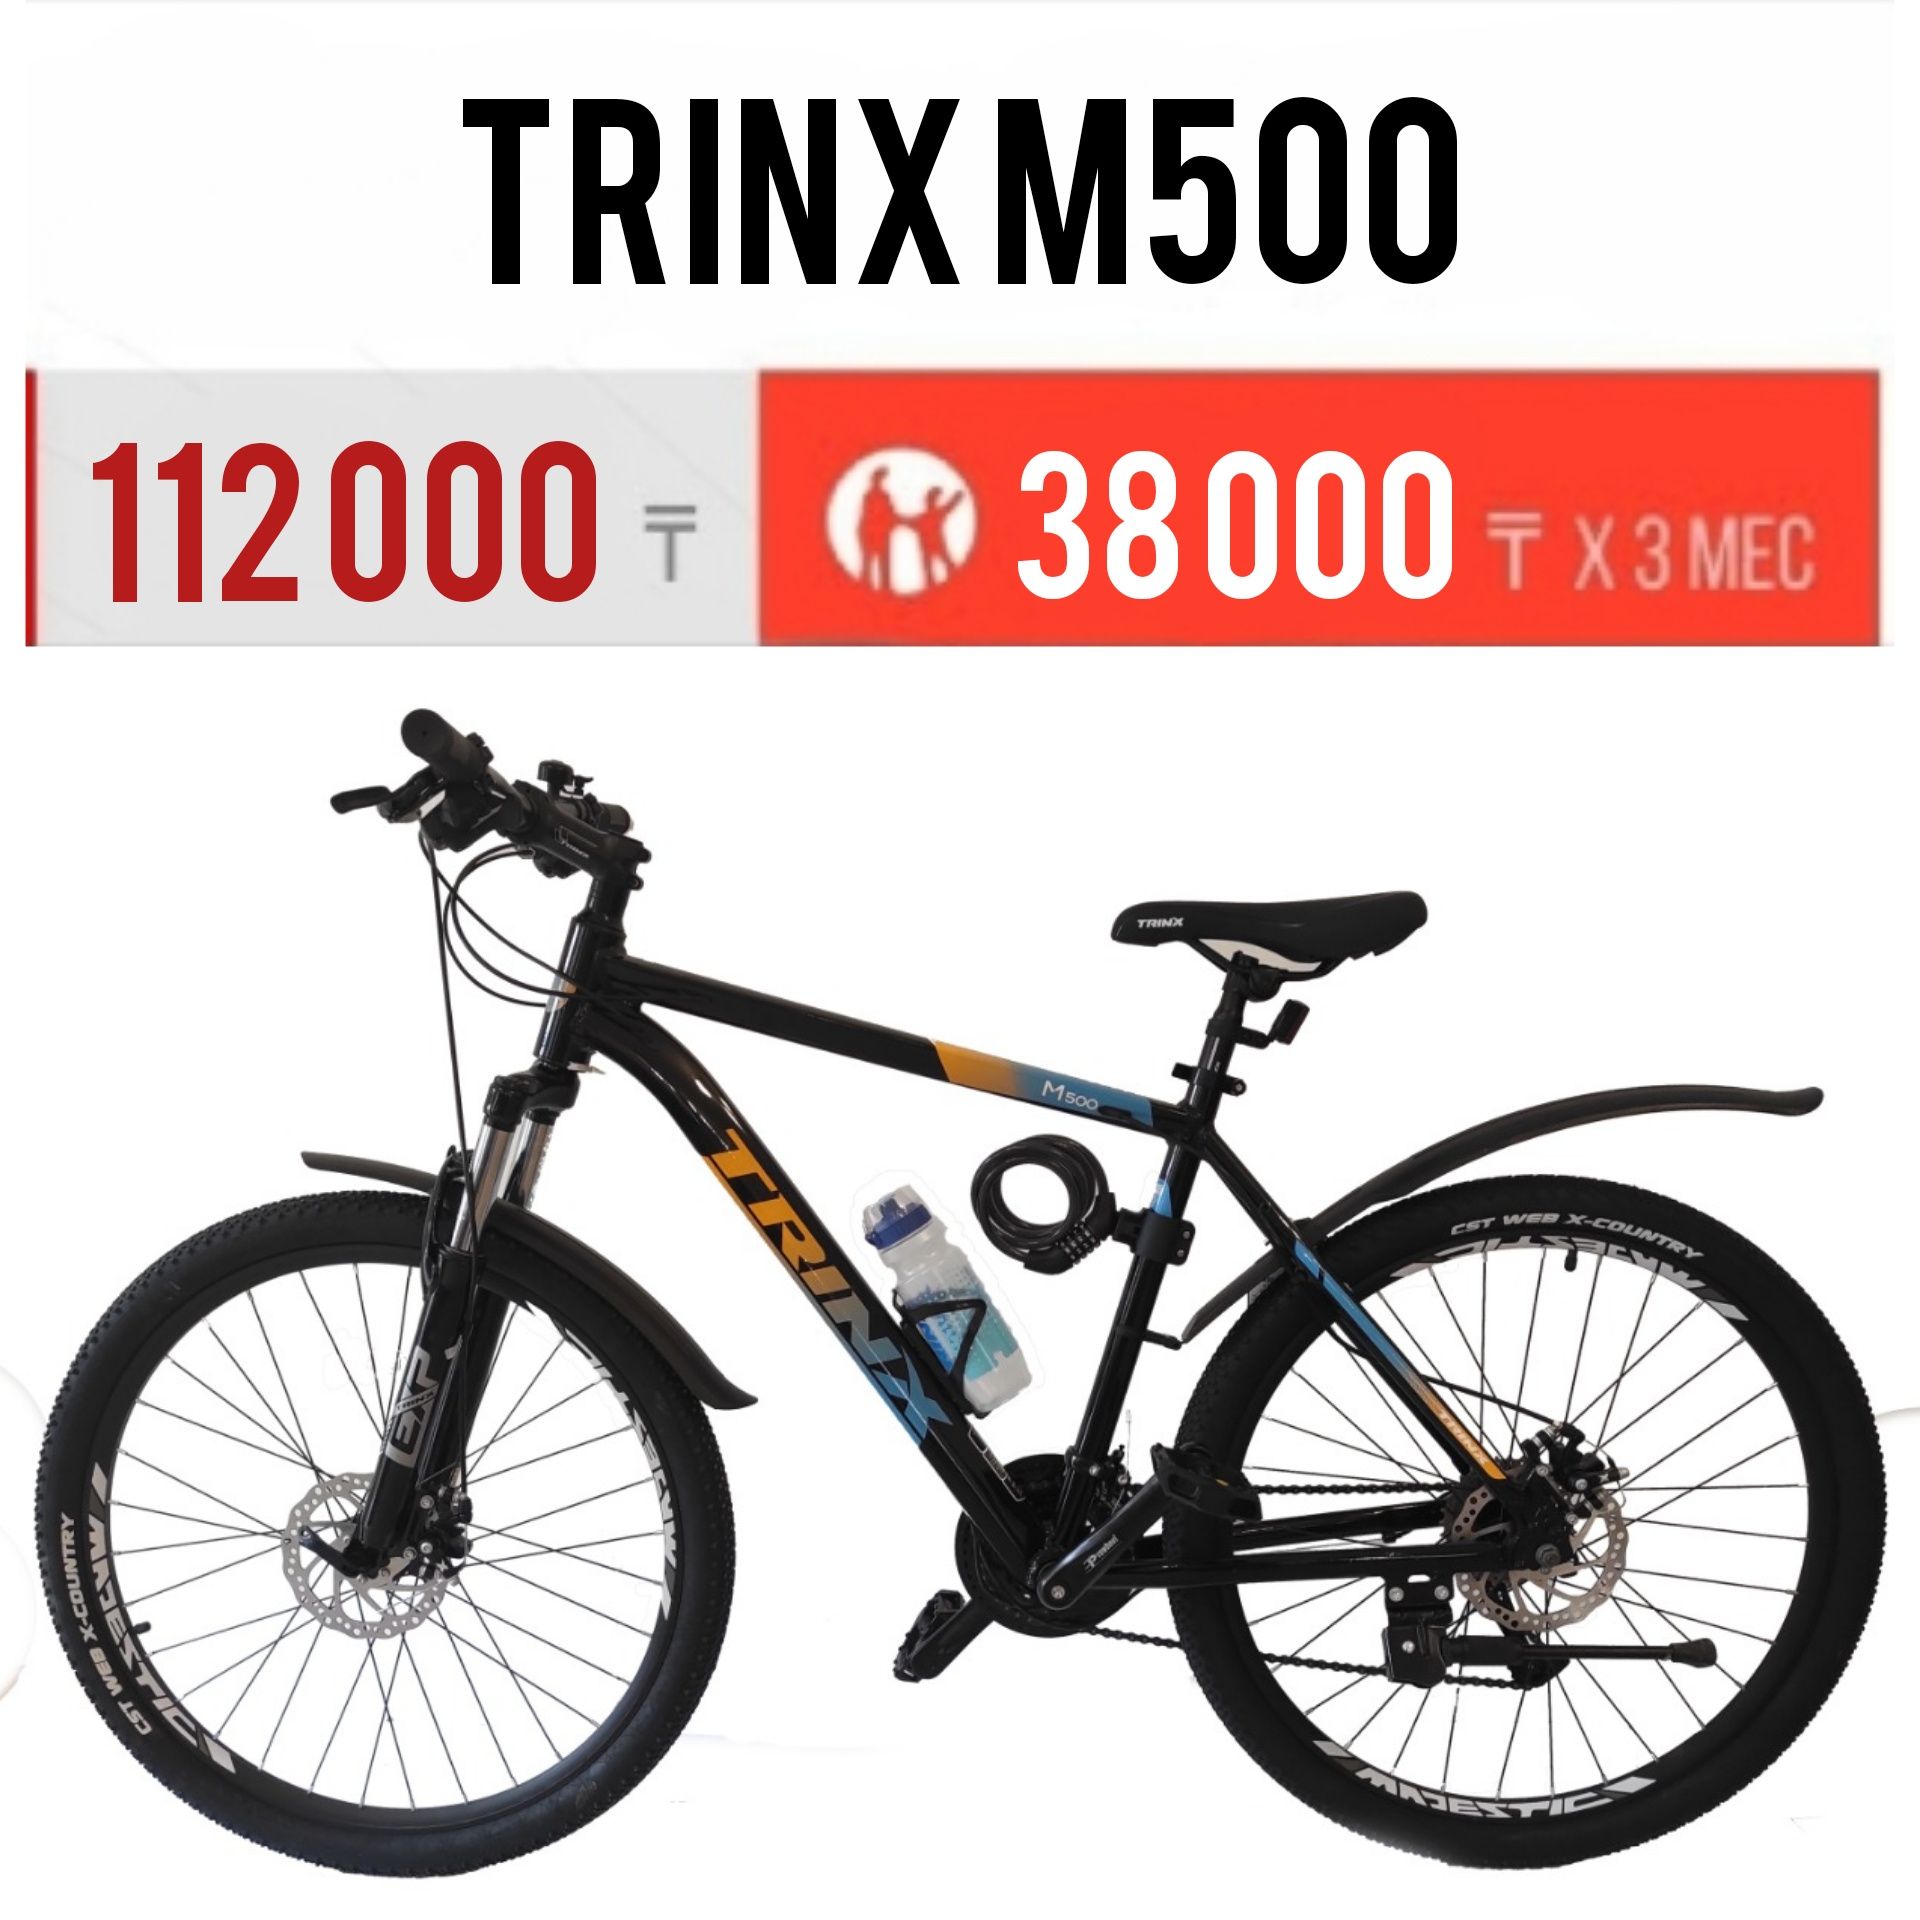 Велосипед Trinx m500. Рама 17,19,21". Колеса 26". Рассрочка